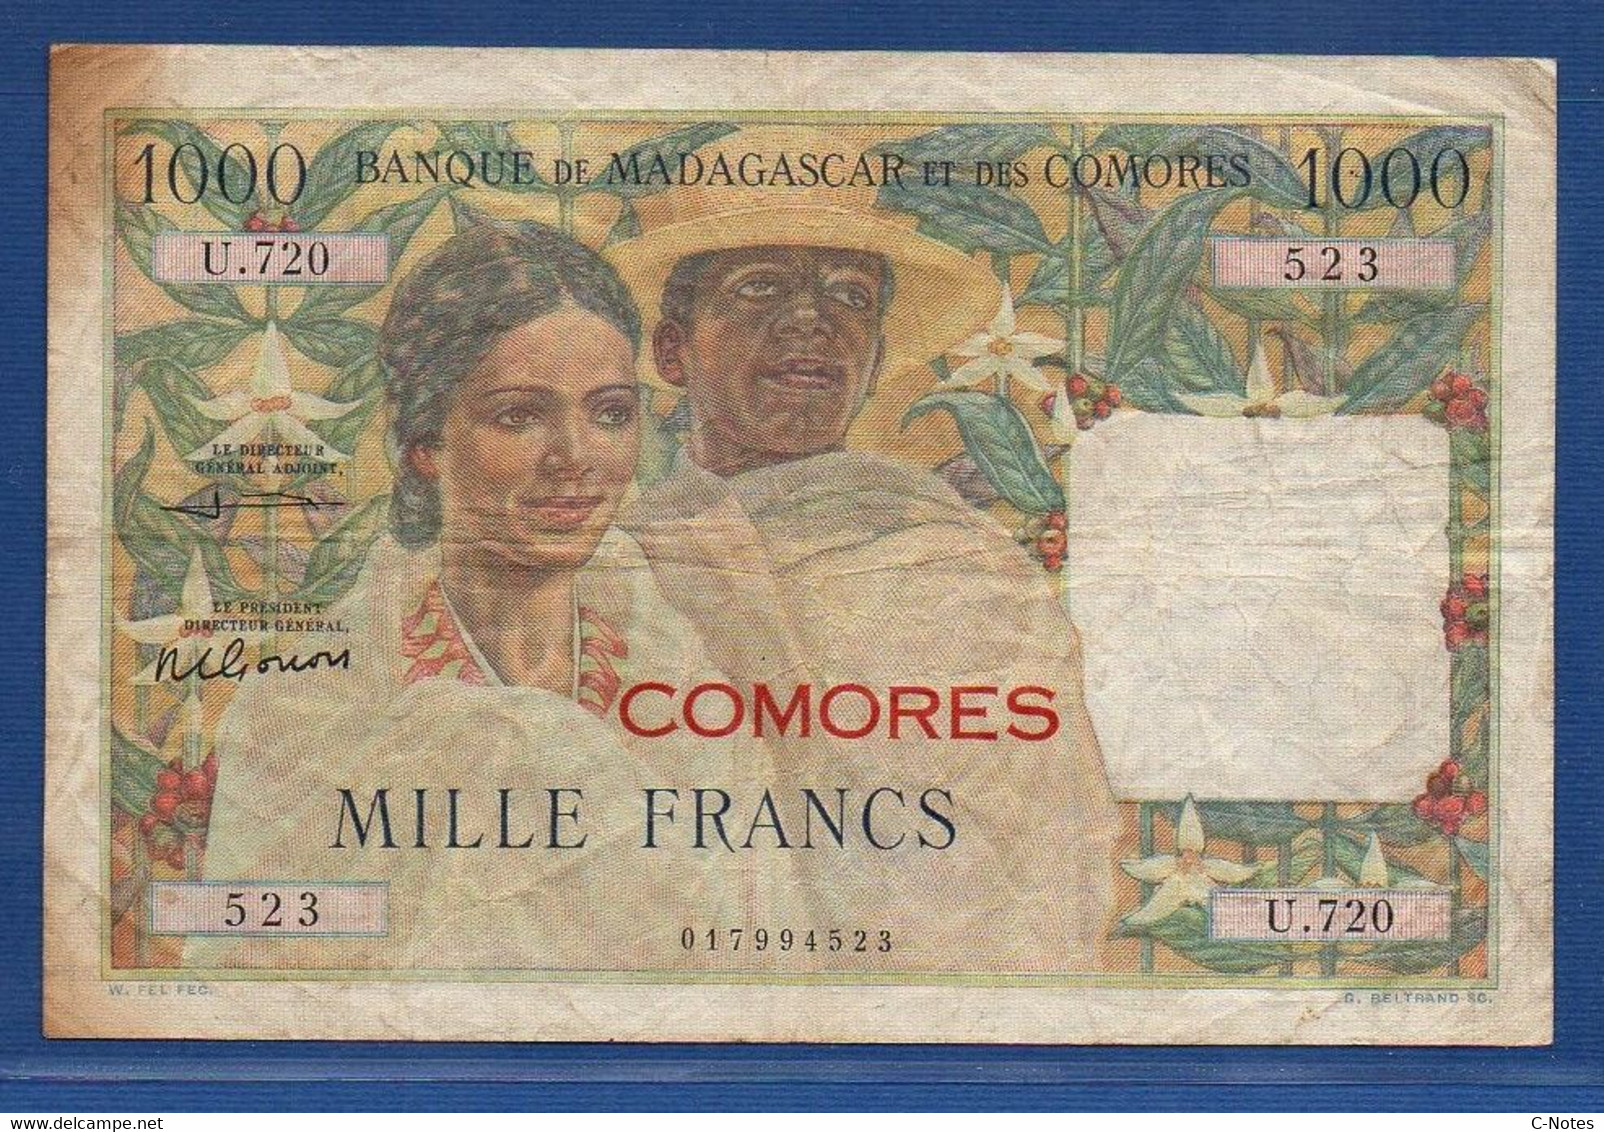 COMOROS - P. 5b2 – 1000 Francs 1963 Circulated / F+, Serie U.720 523 - Komoren